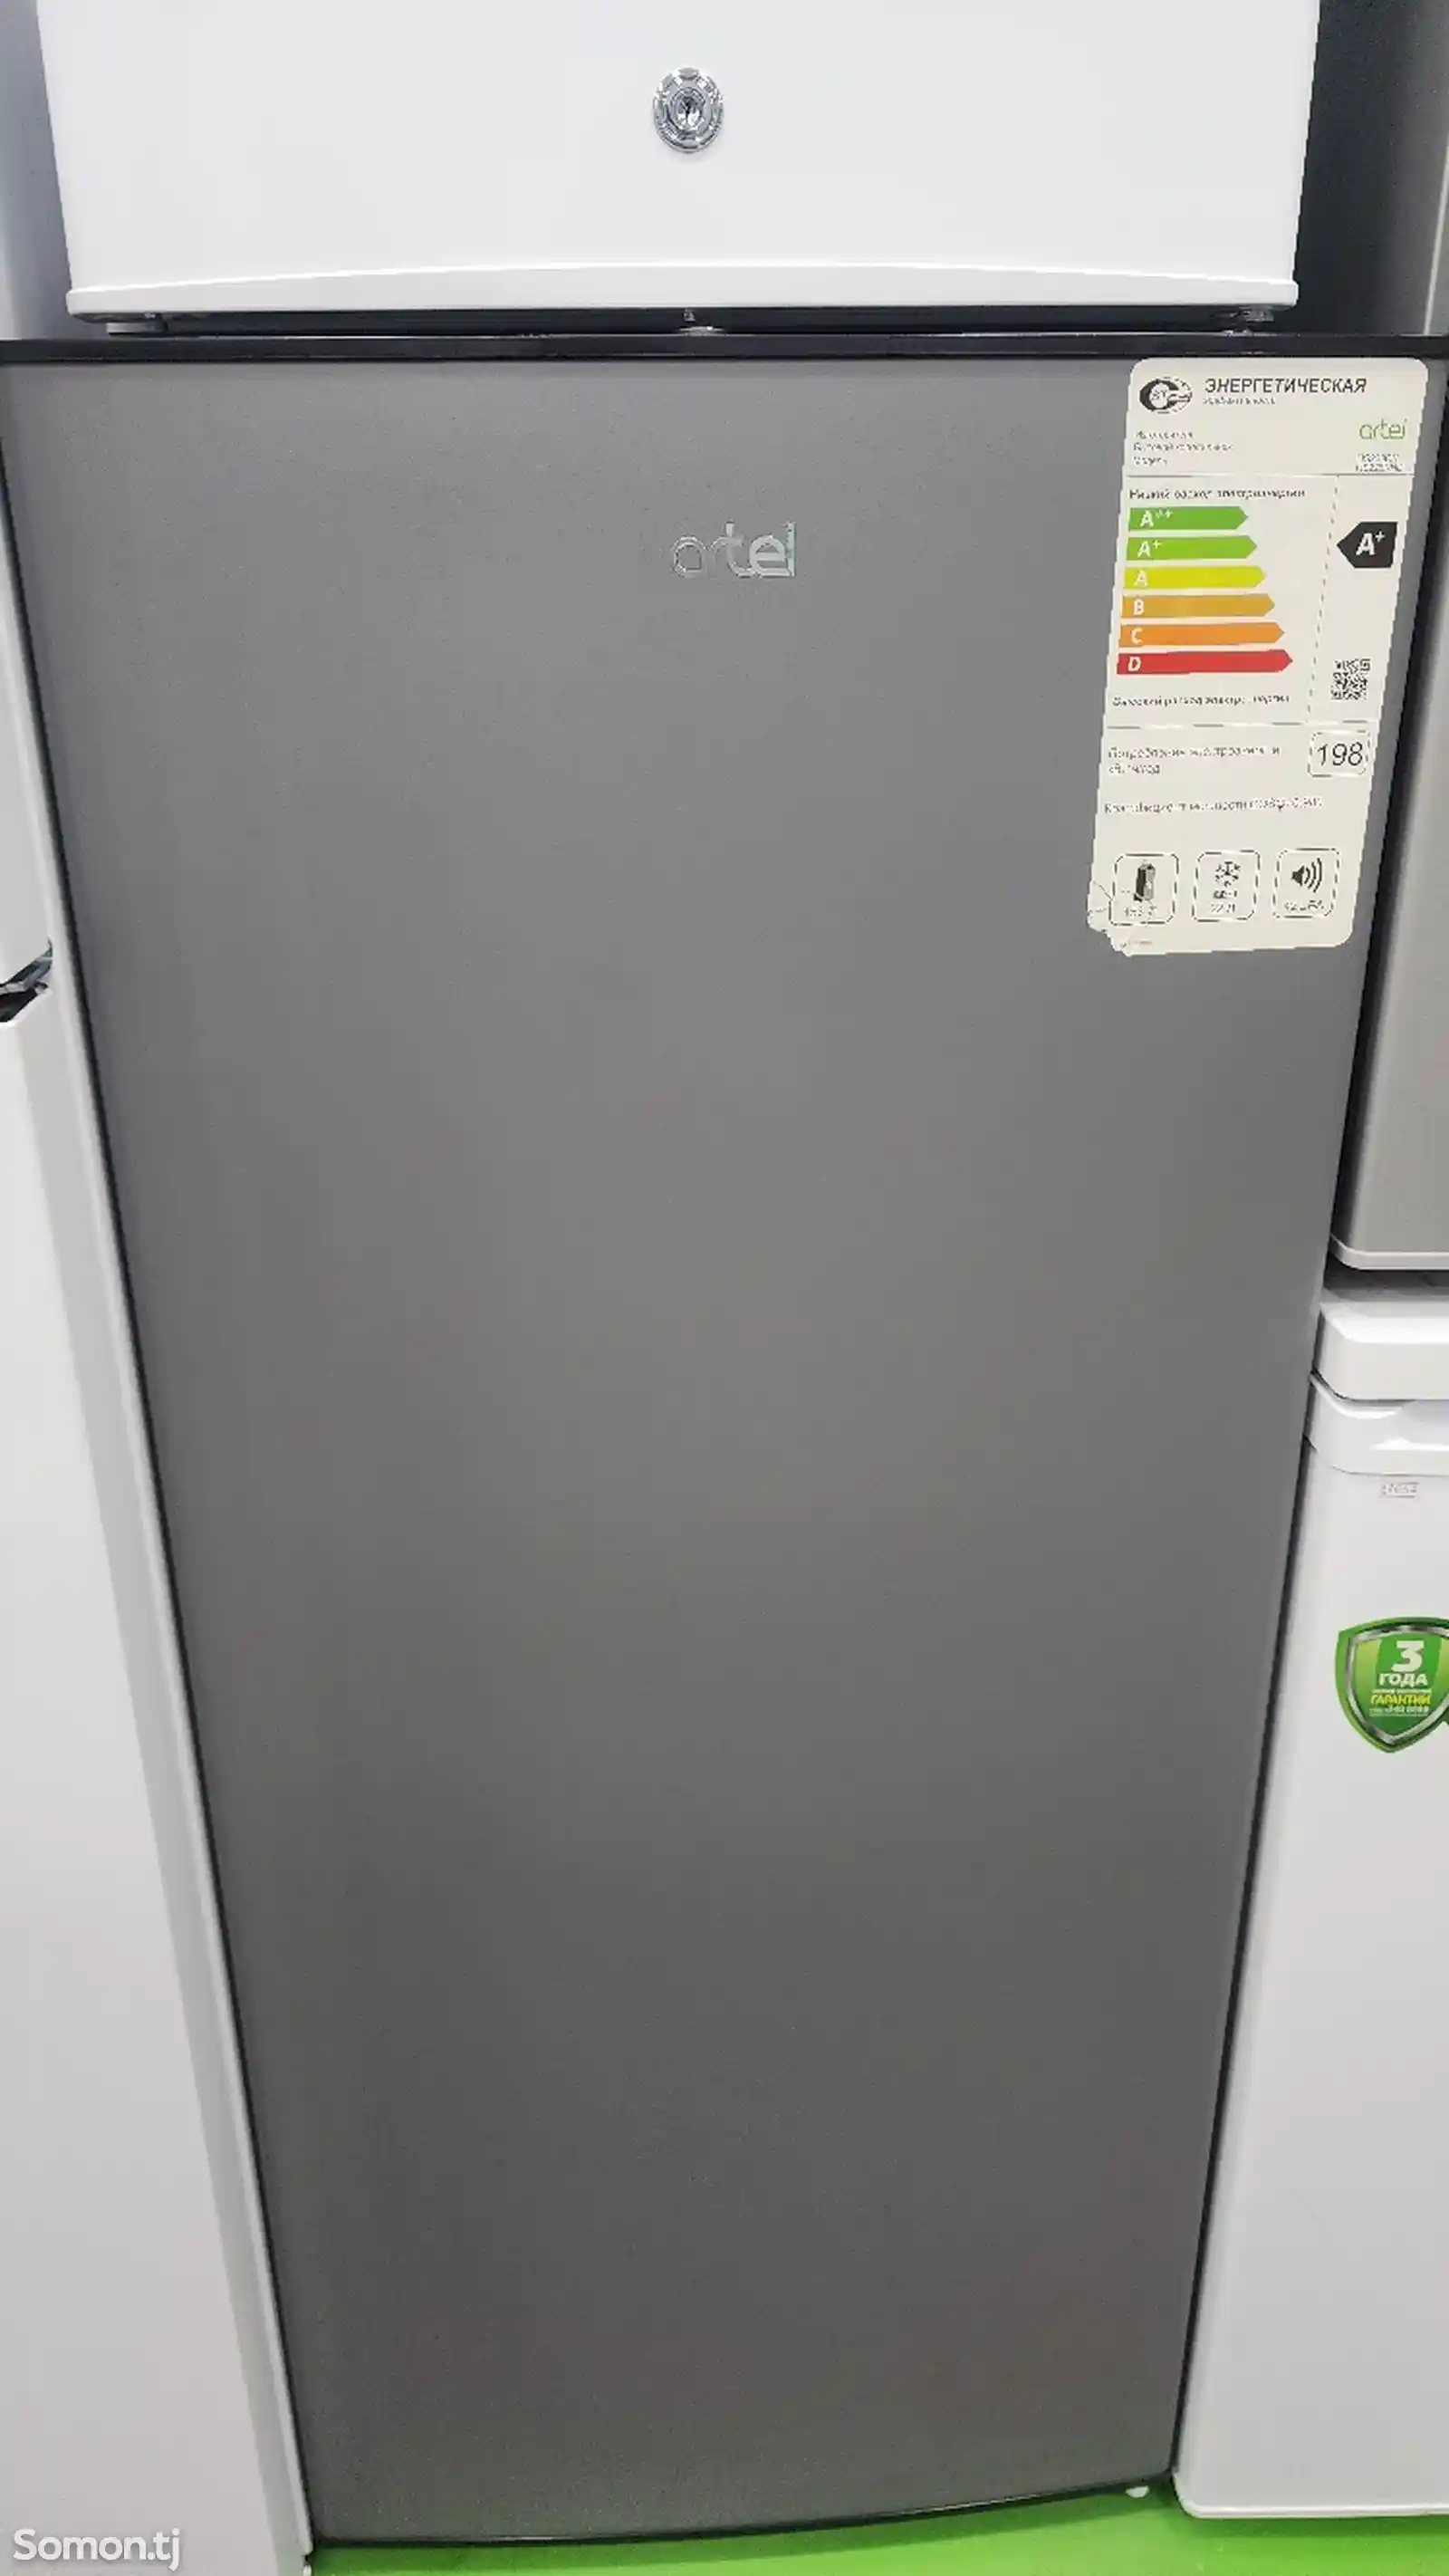 Однокамерный холодильник Artel 228-1